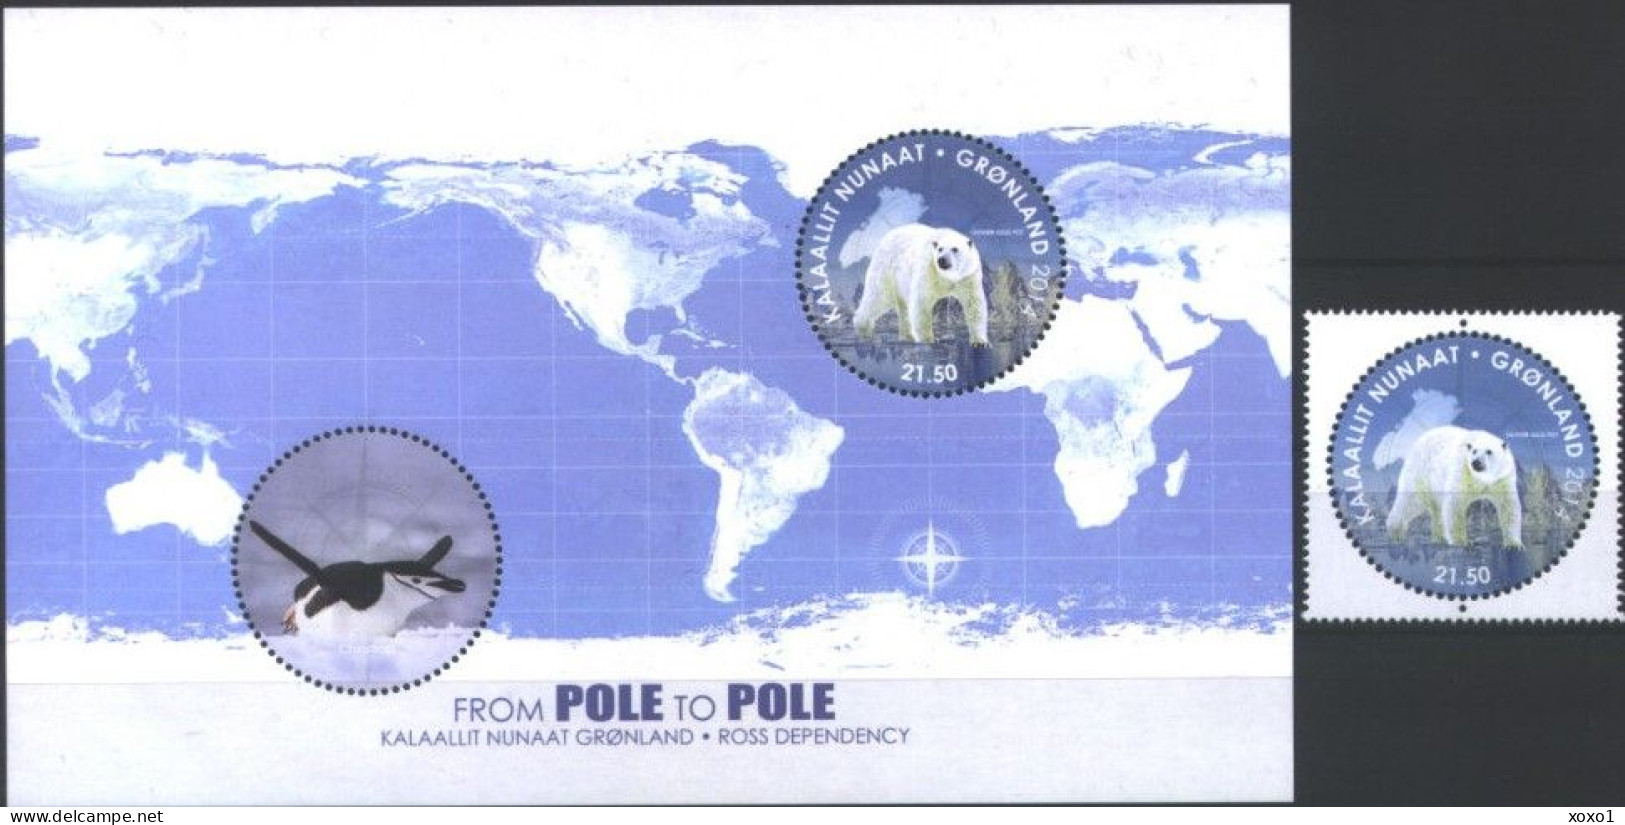 Greenland 2014 MiNr. 680 (Block 70) Dänemark Grönland Ross Antarctica Pole Bears BIRDS Penguins 1v + S\sh MNH** 13.00 € - Arctic Tierwelt